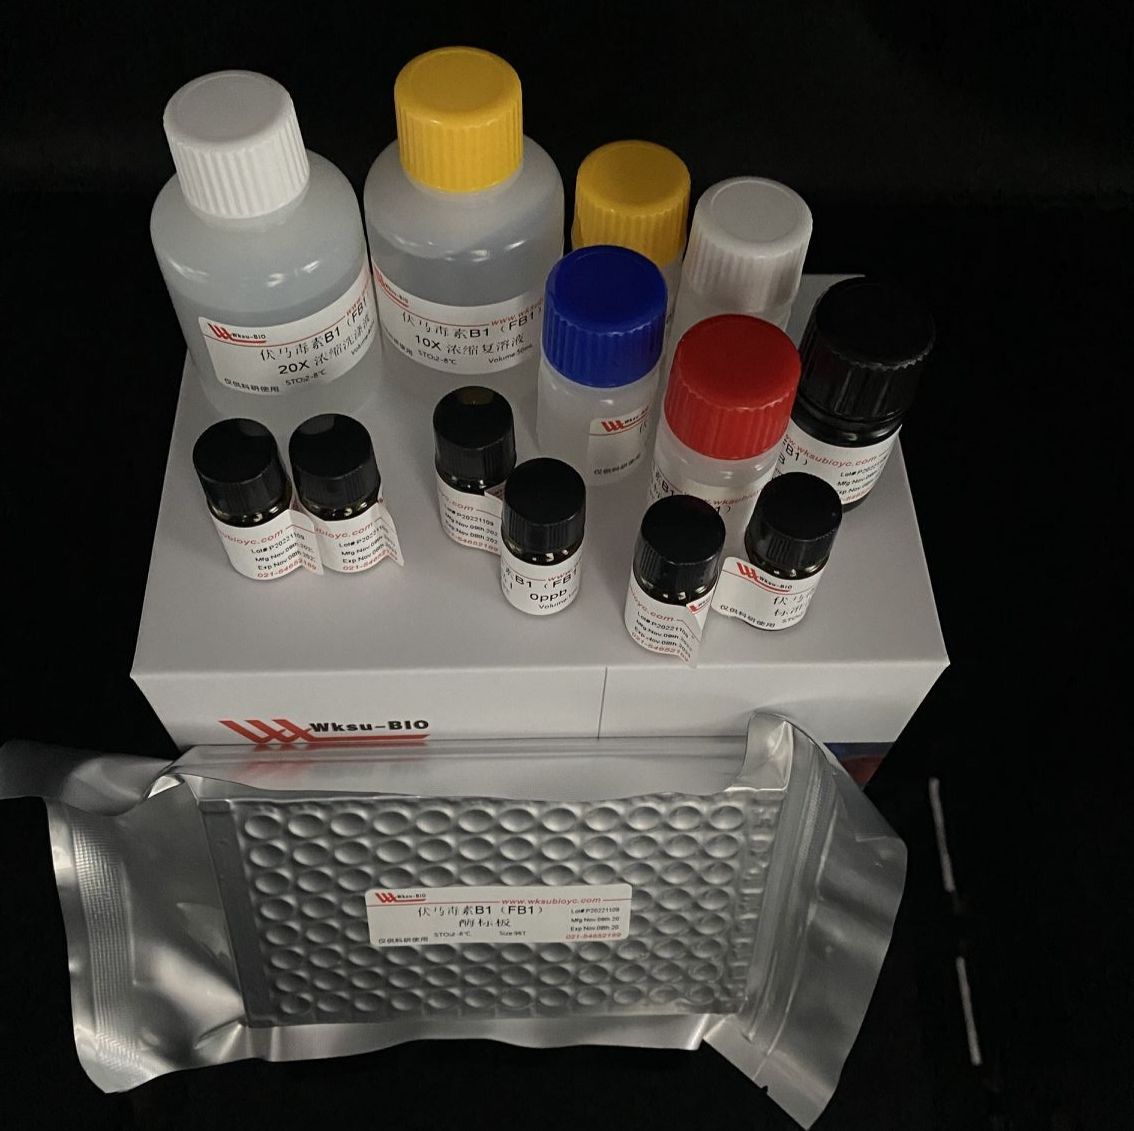 尿素含量测定试剂盒(二乙酰一肟法)